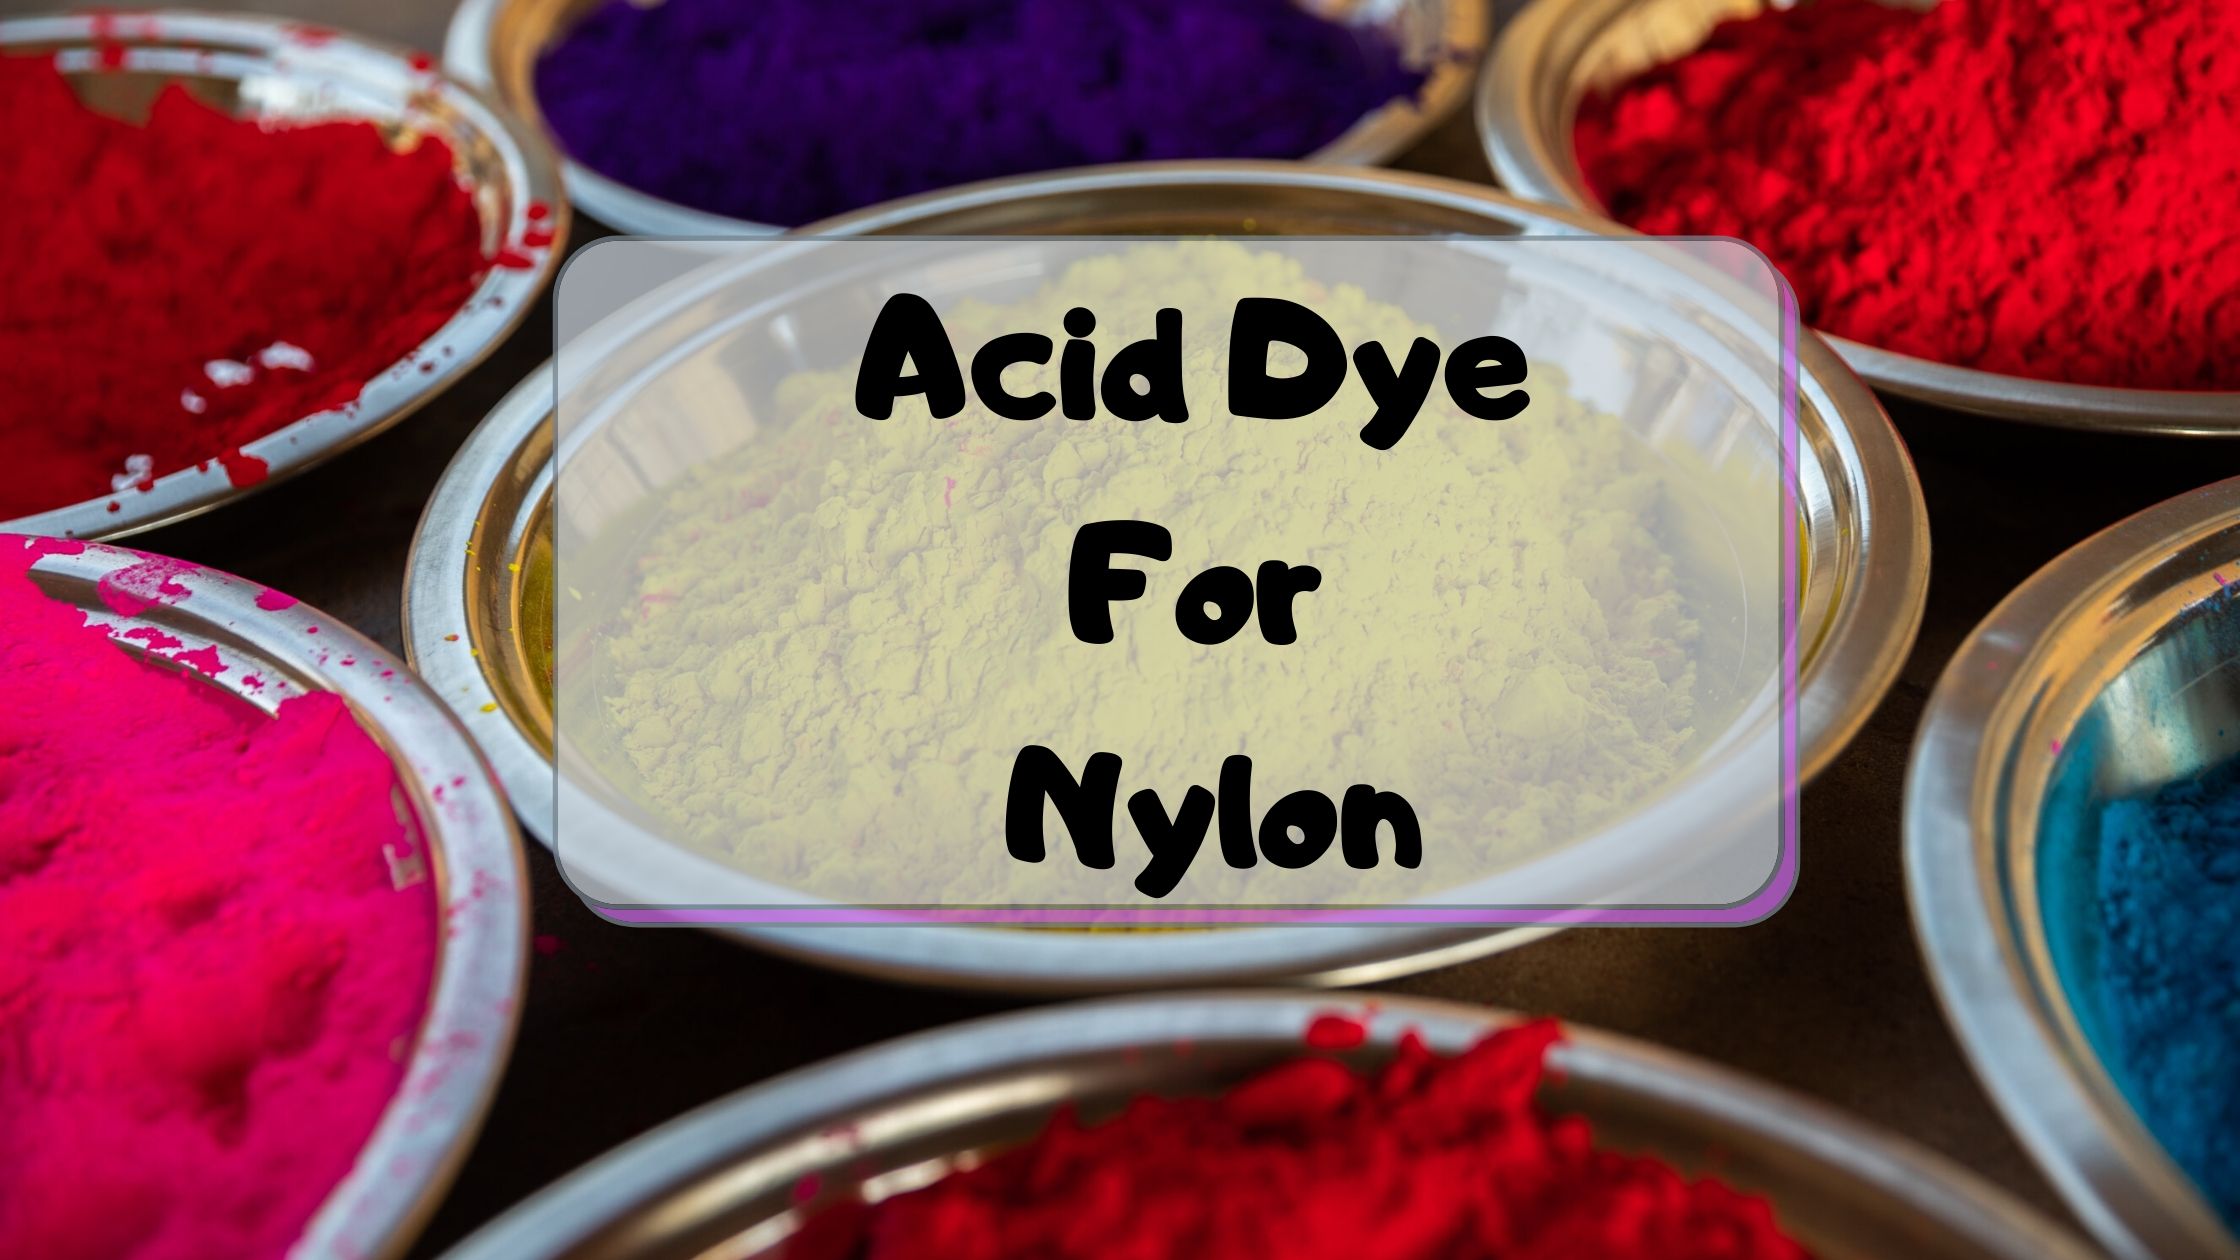 Acid dye for Nylon